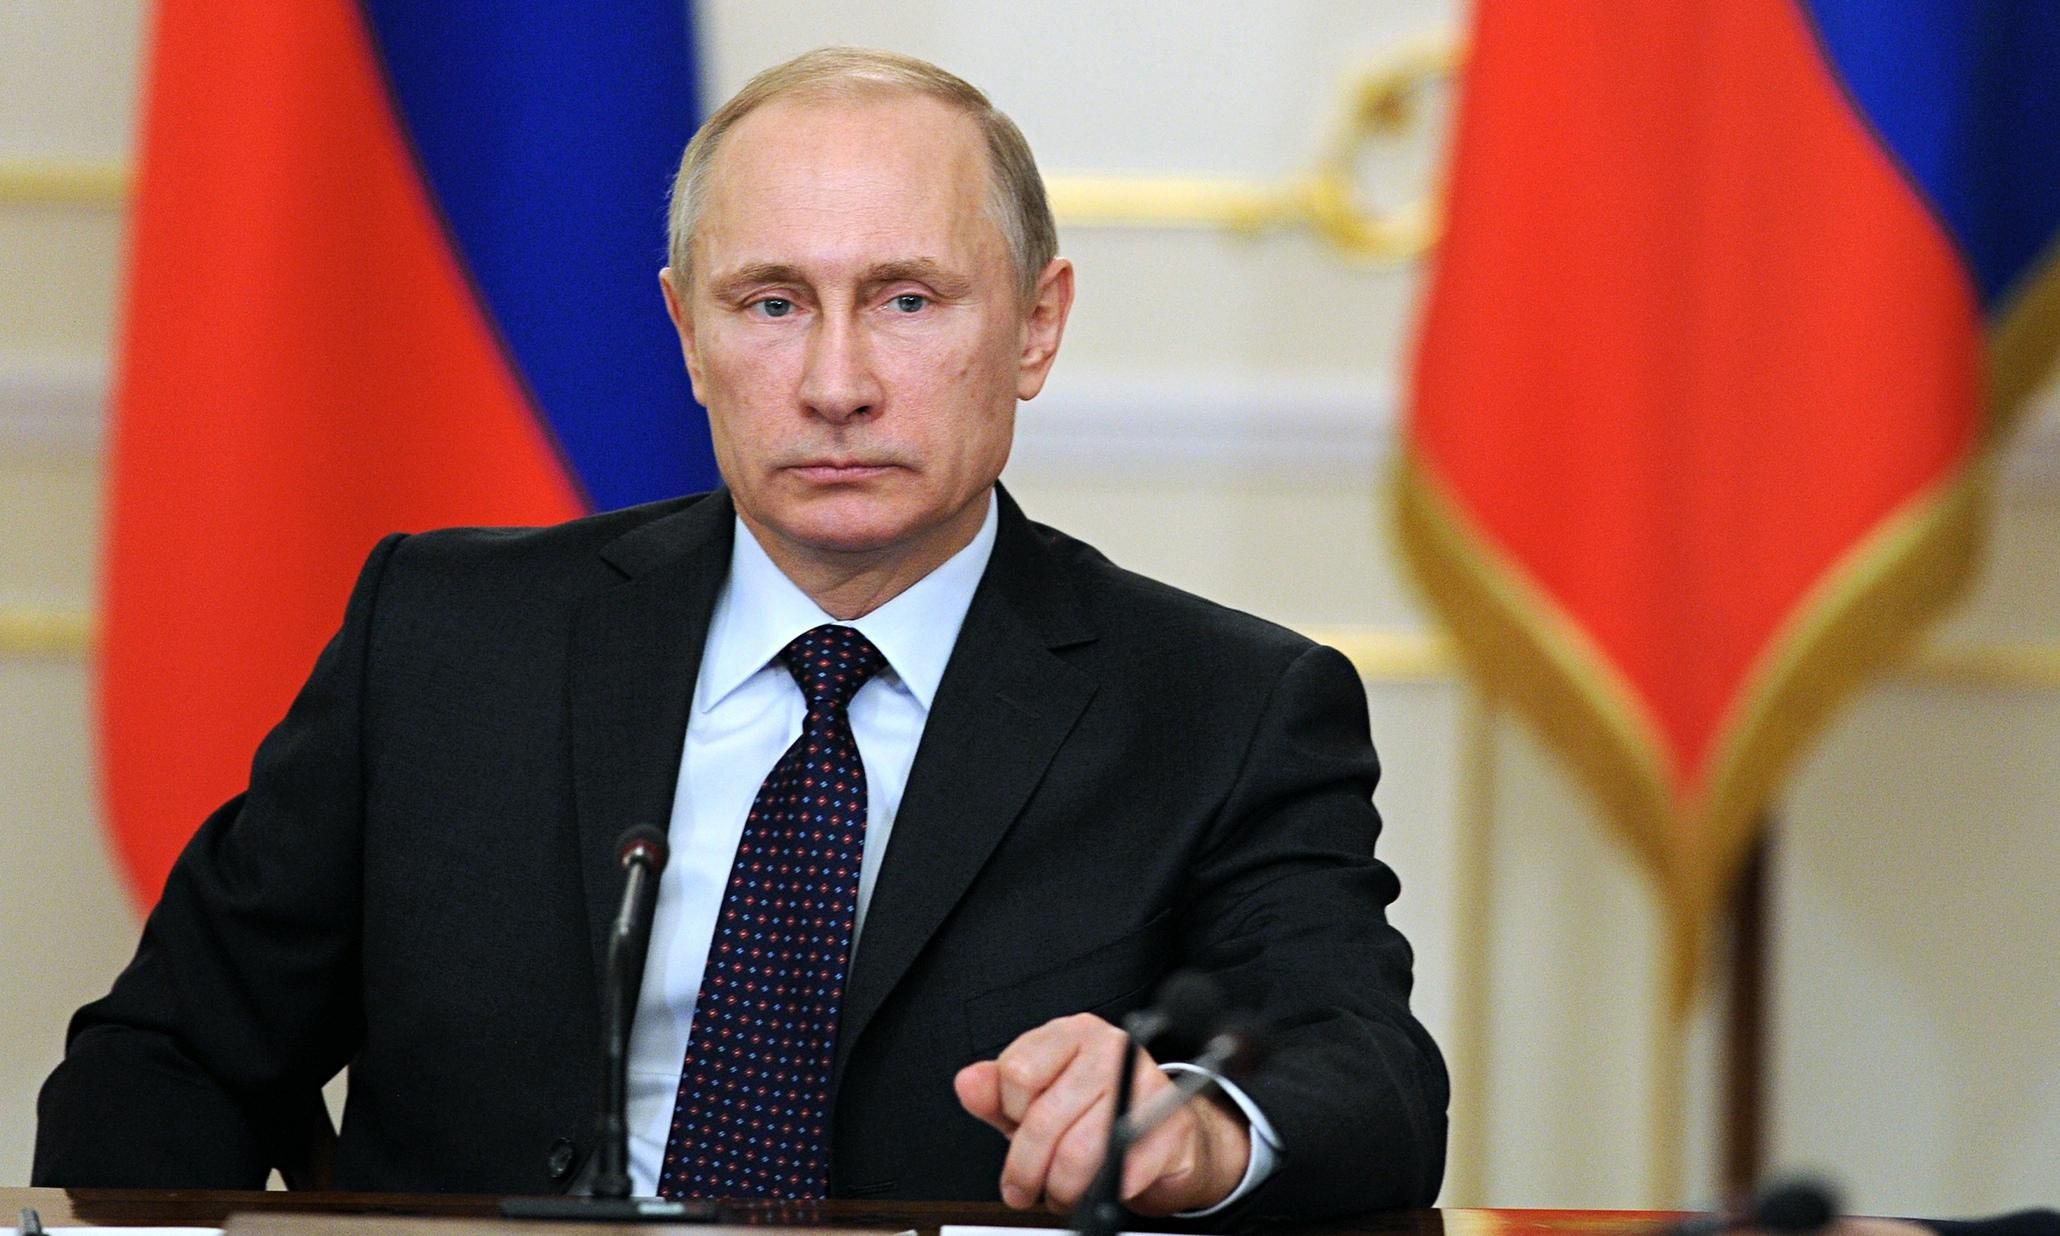 Зачем нам мир без России? – Путин назвал условие, когда РФ может применить ядерное оружие